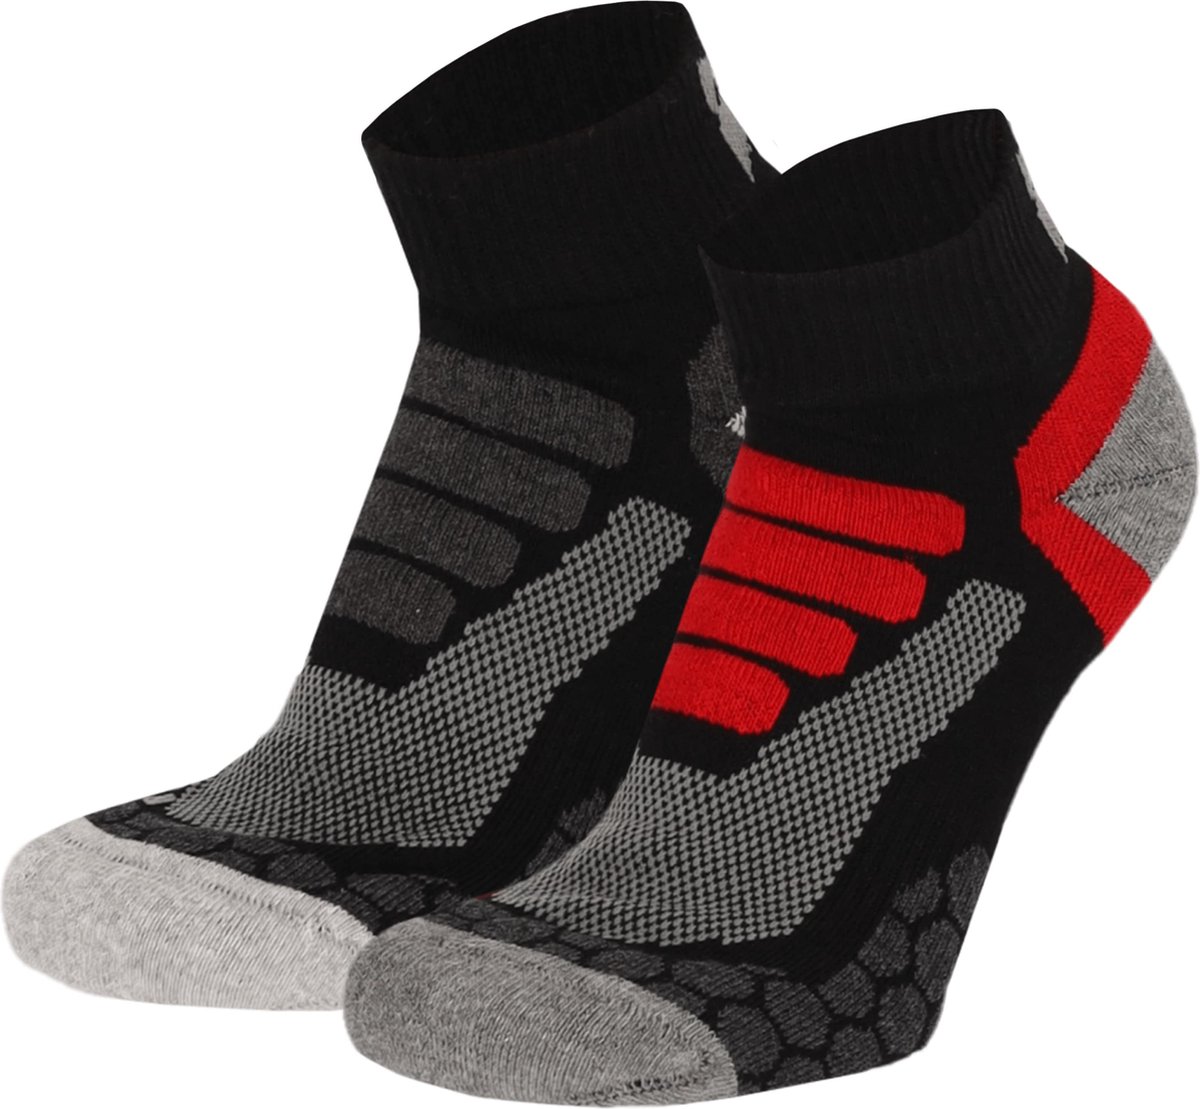 Xtreme Wandelsokken Quarter - Lage hiking sokken - 2-pack - Multi Black - Maat 35/38